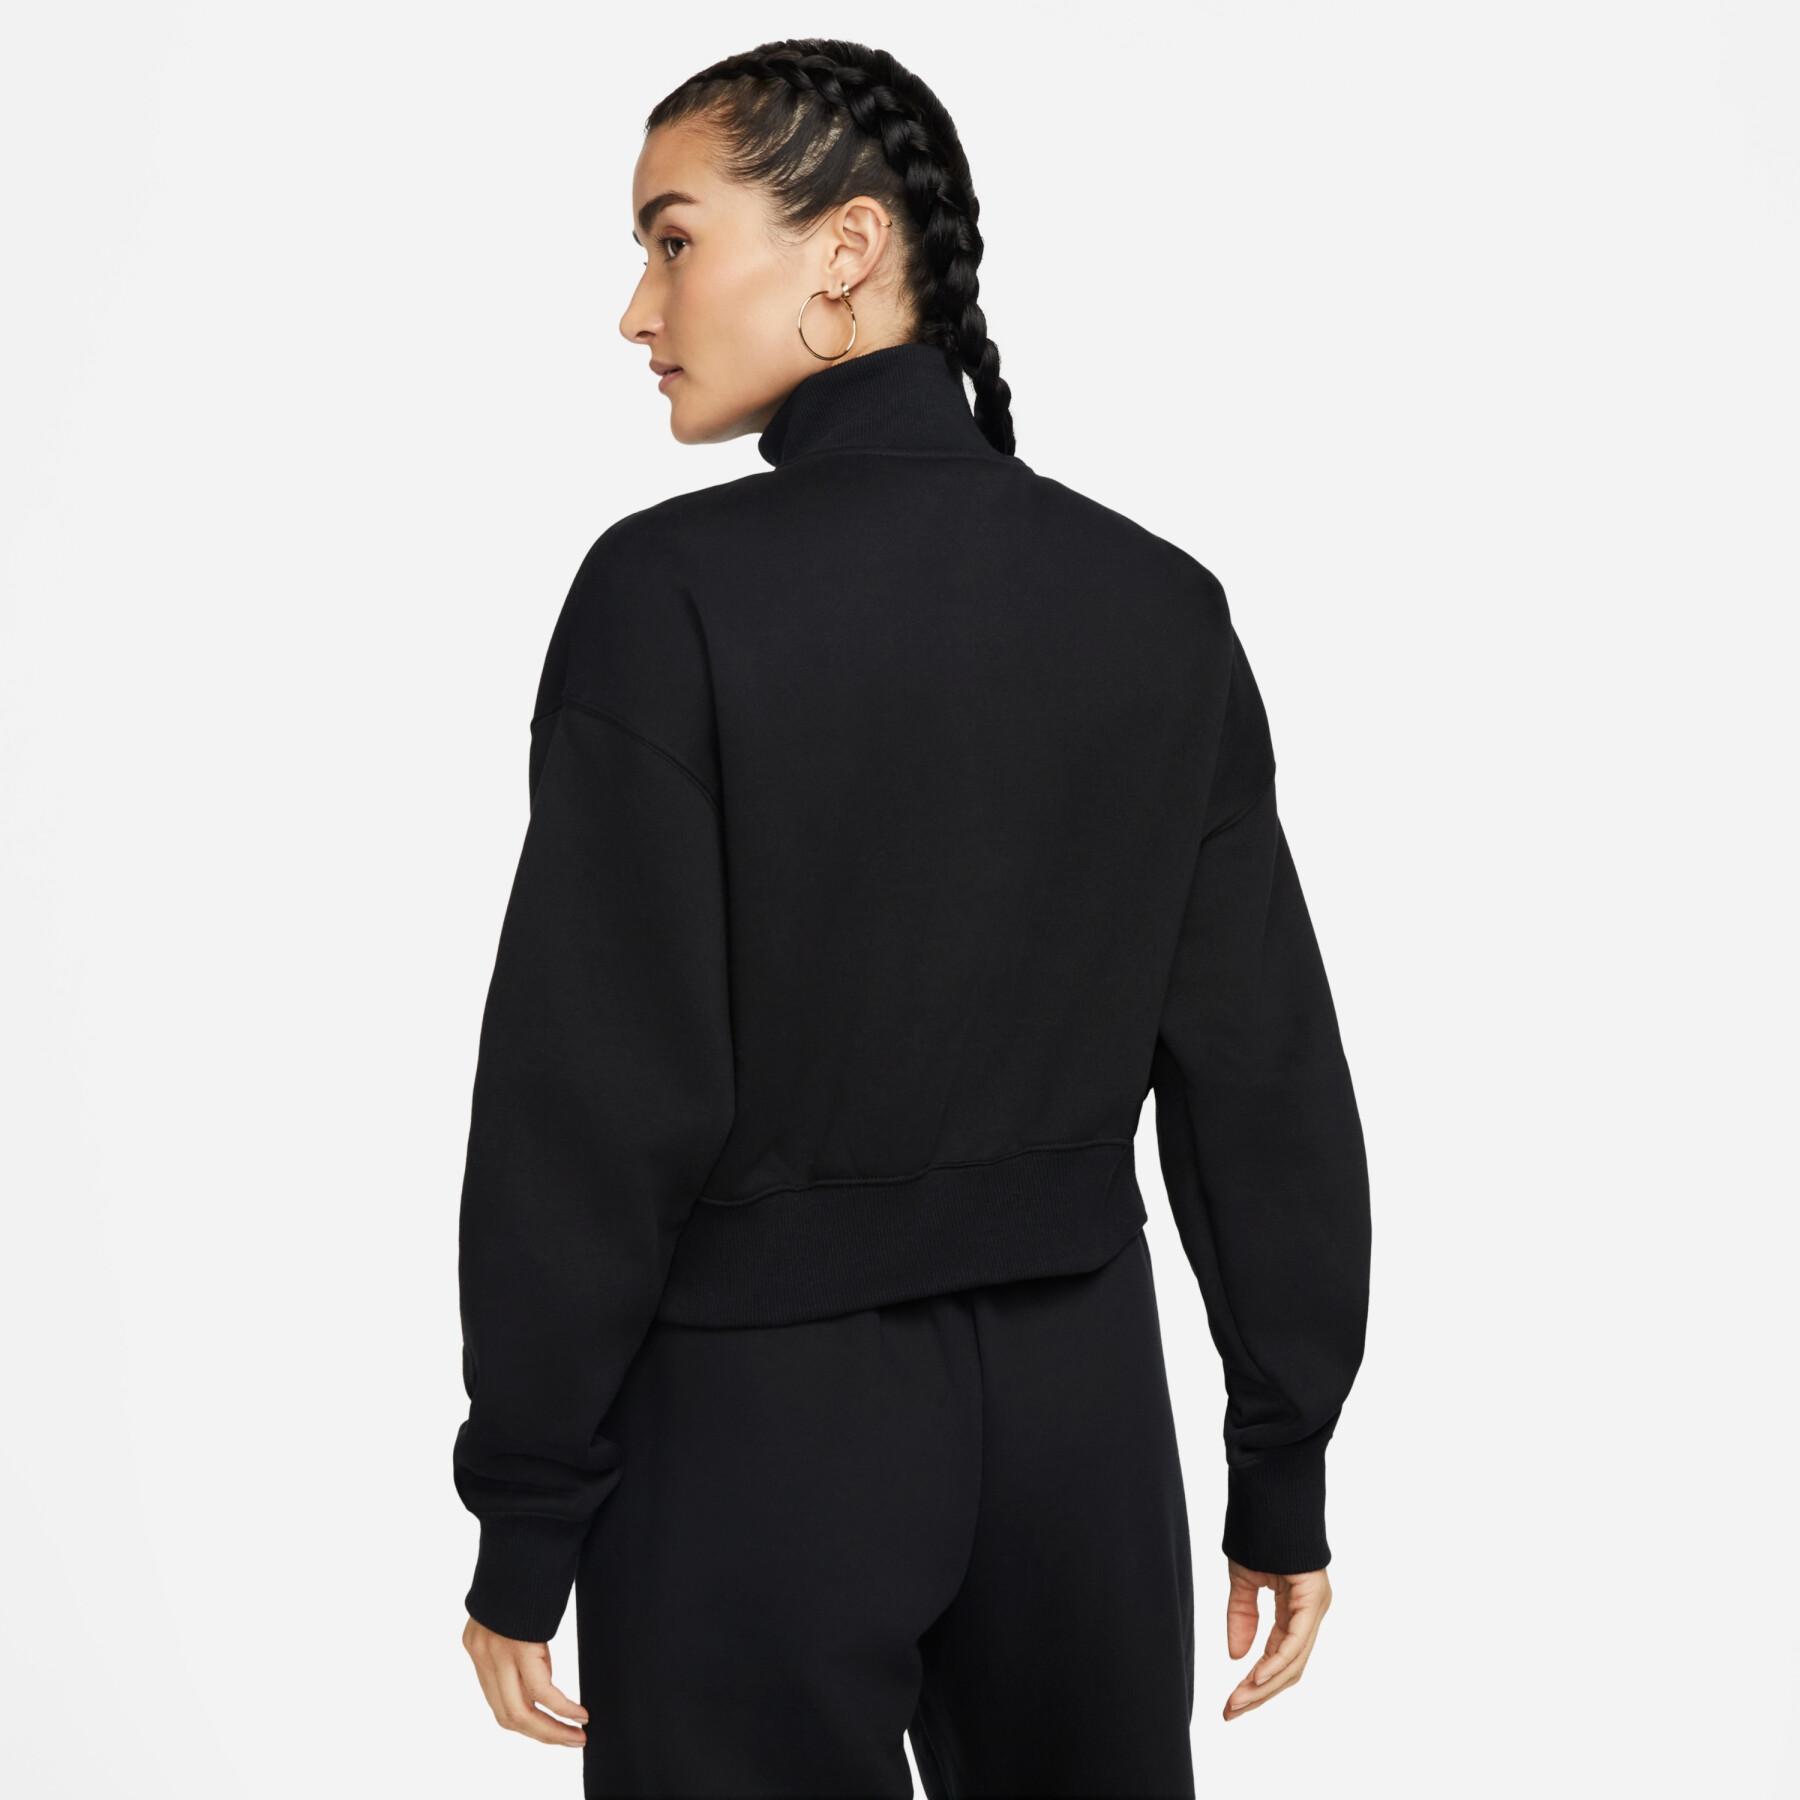 Women's 1/2 zip crop sweatshirt Nike Phoenix Fleece